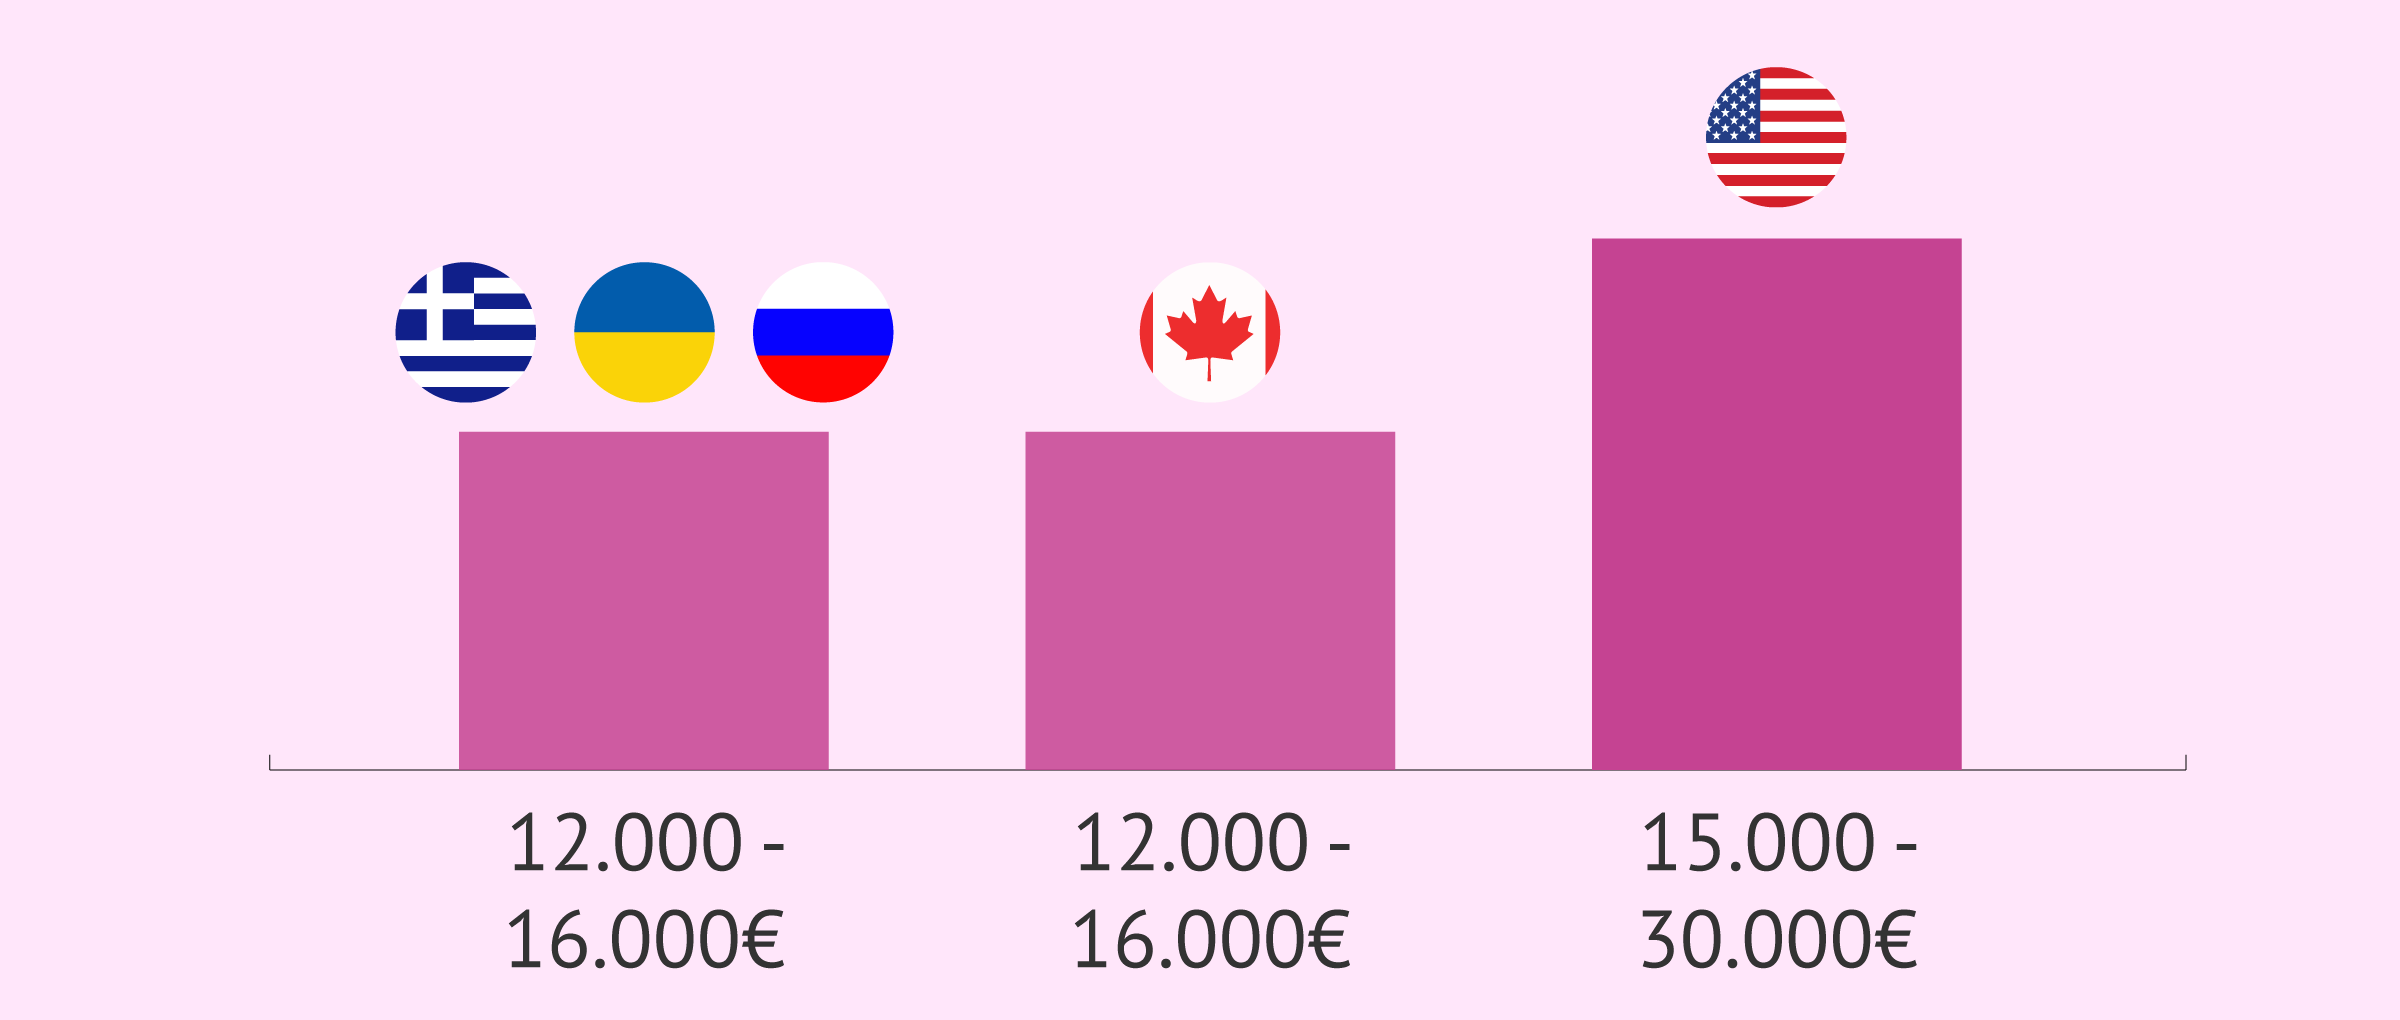 Precios de las agencias según el país